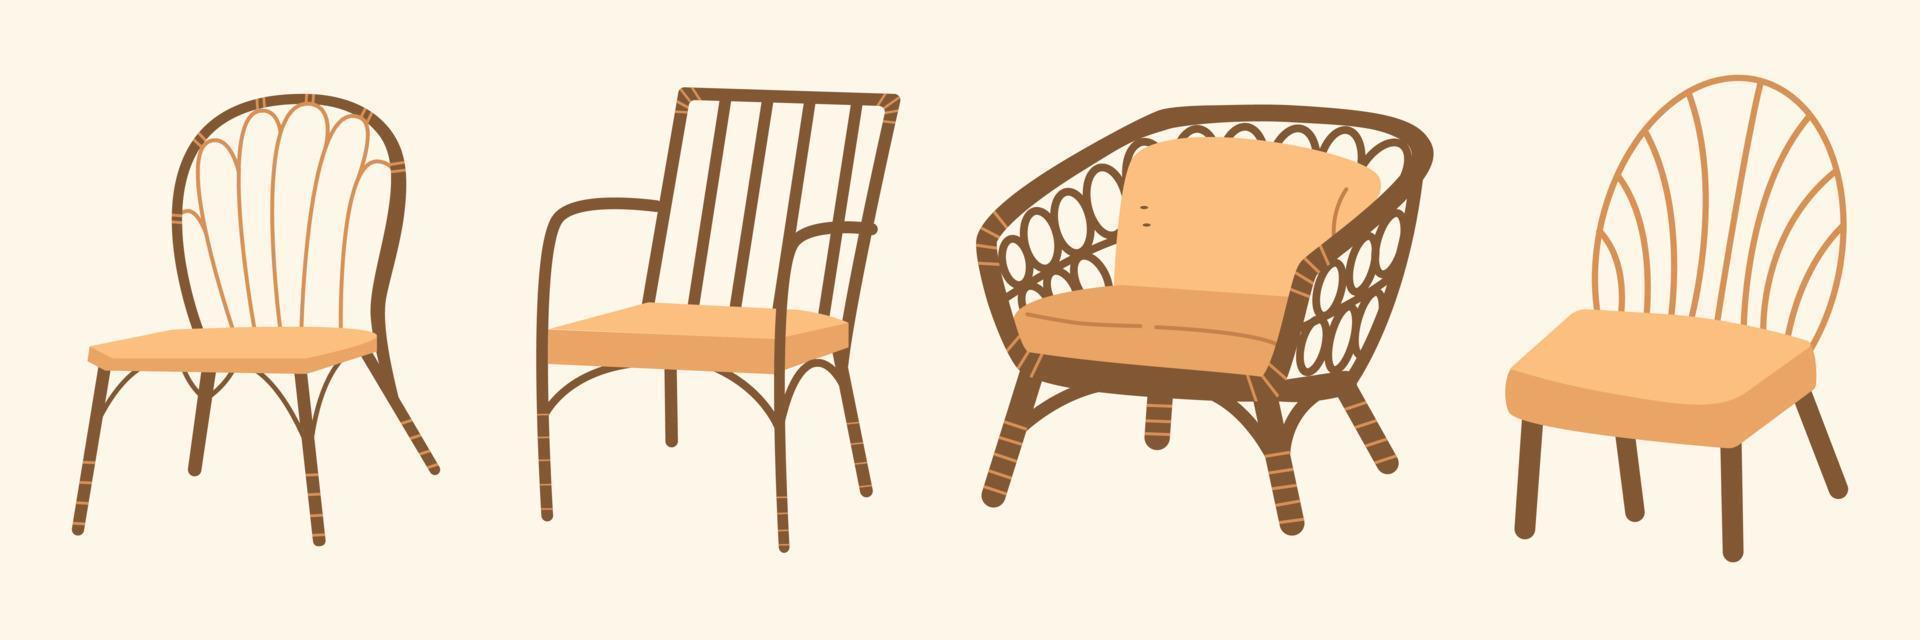 Vintage-Möbel im Boho-Design-Stil. böhmische illustration für designelemente. antike stühle im klassischen stil vektor